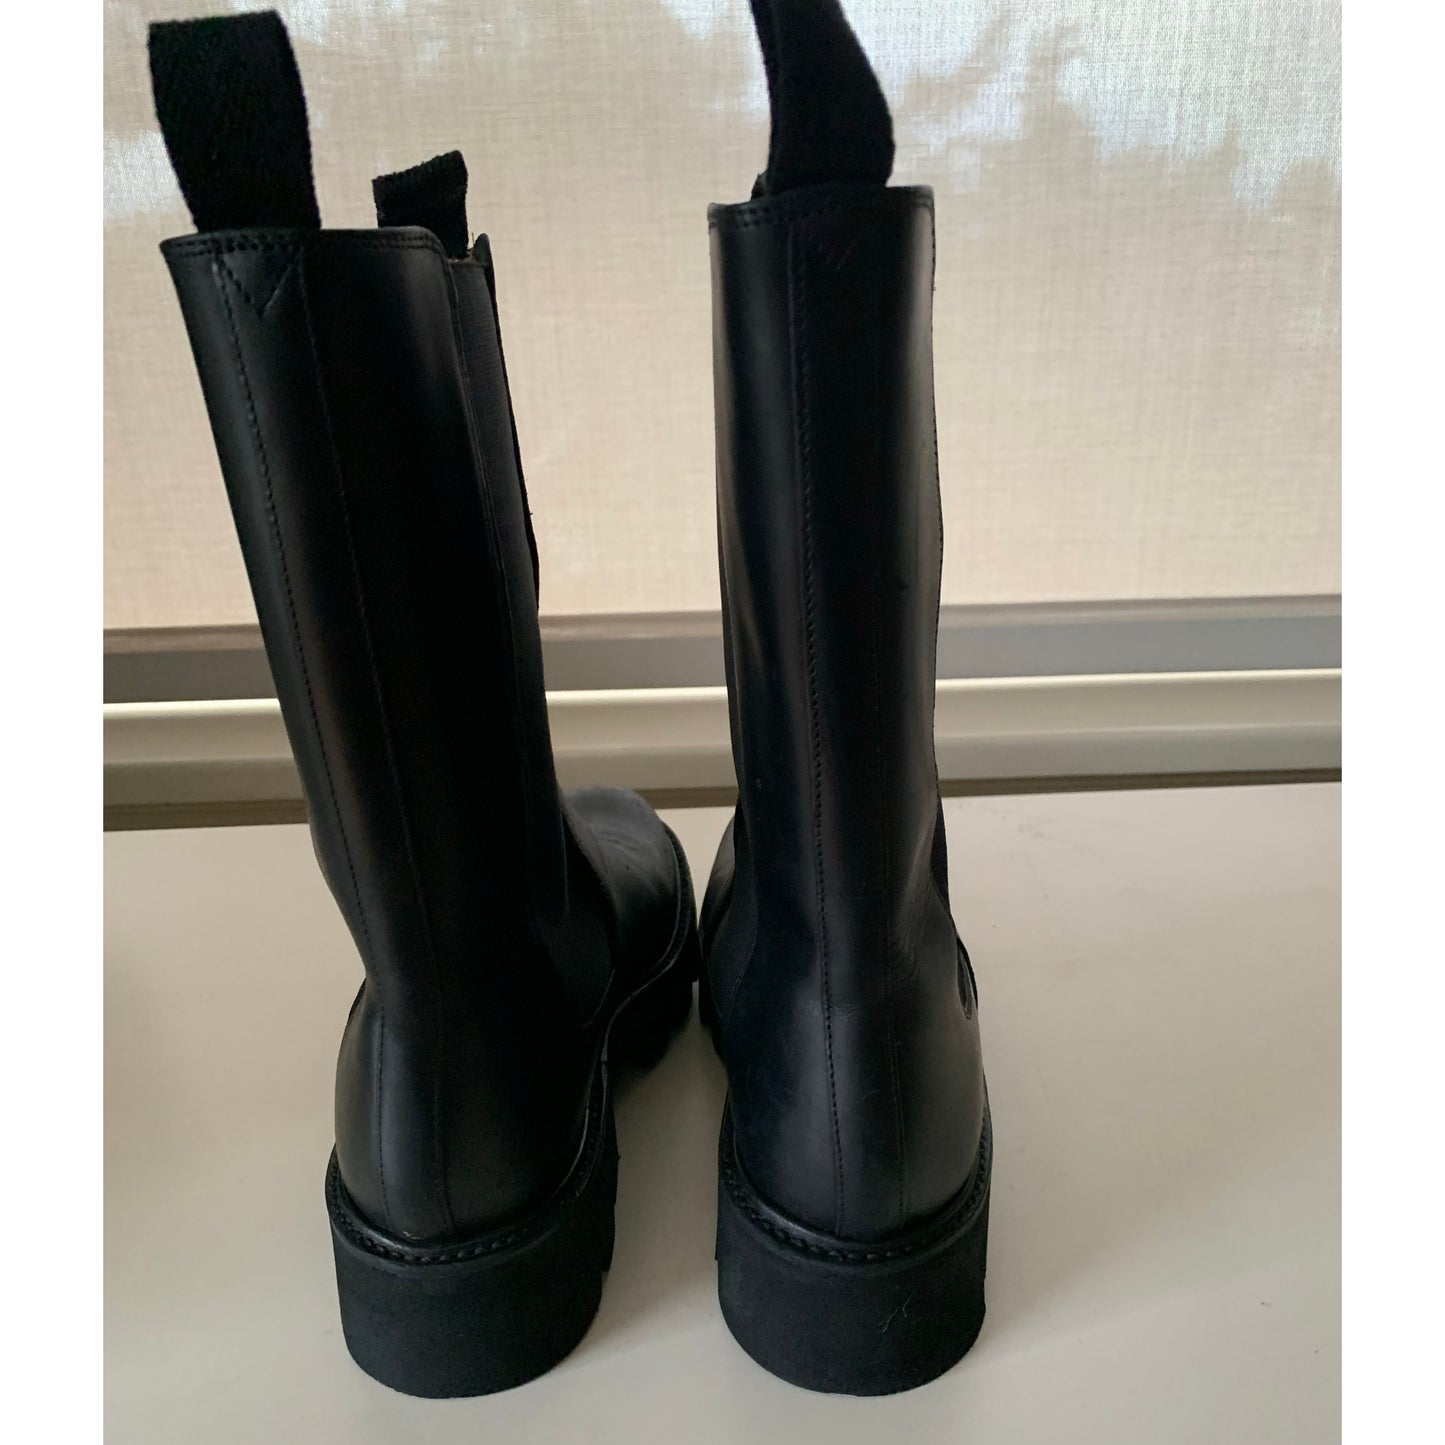 Grenson "Doris" Boot in Black, size 6UK/8.5US